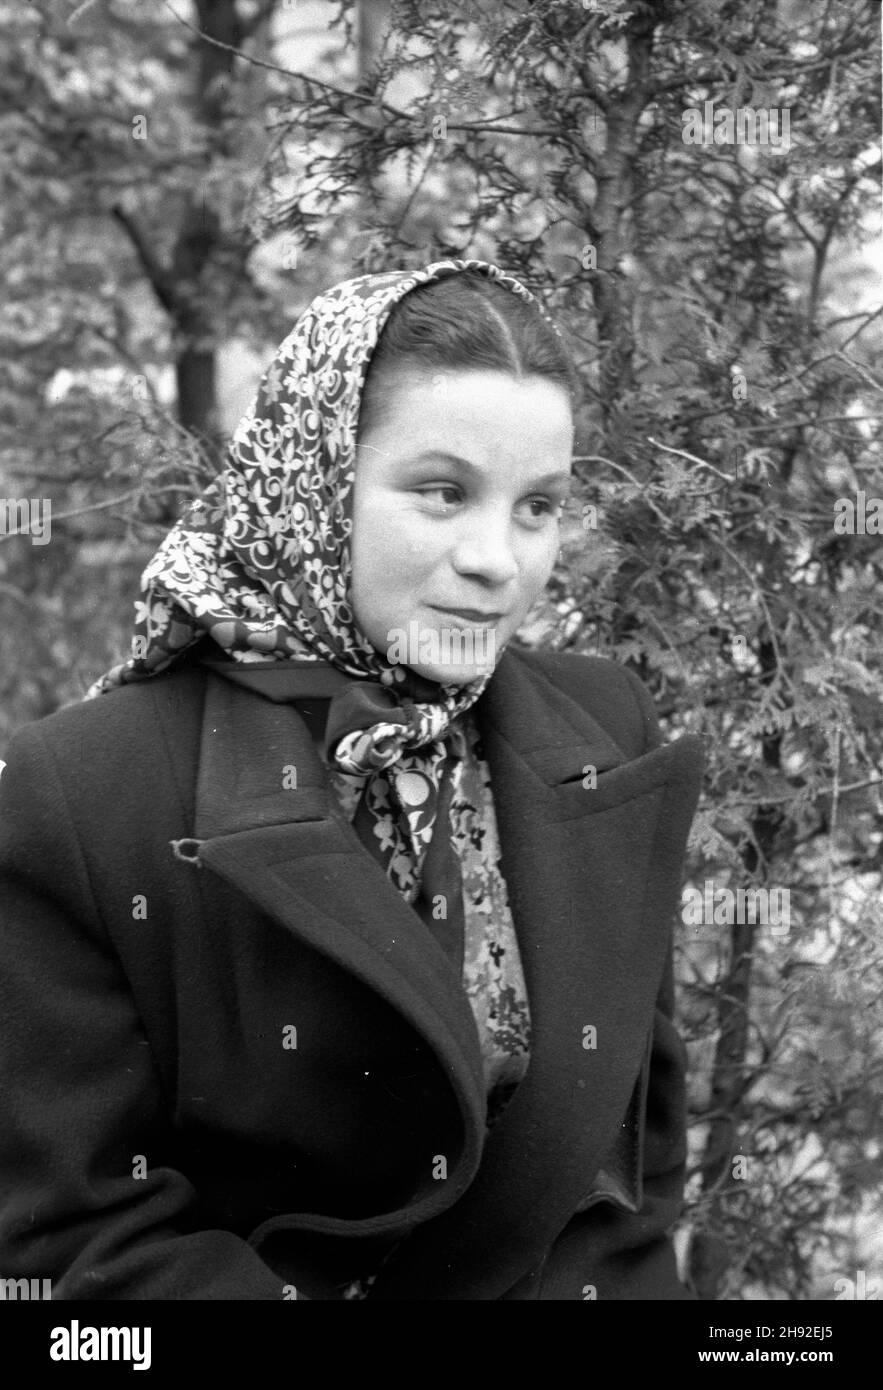 Polska, 1947-05. Portret kobiety. Dok³adny dzieñ wydarzenia nieustalony.  bk  PAP      Poland, May 1947. The portrait of a woman.   bk  PAP Stock Photo